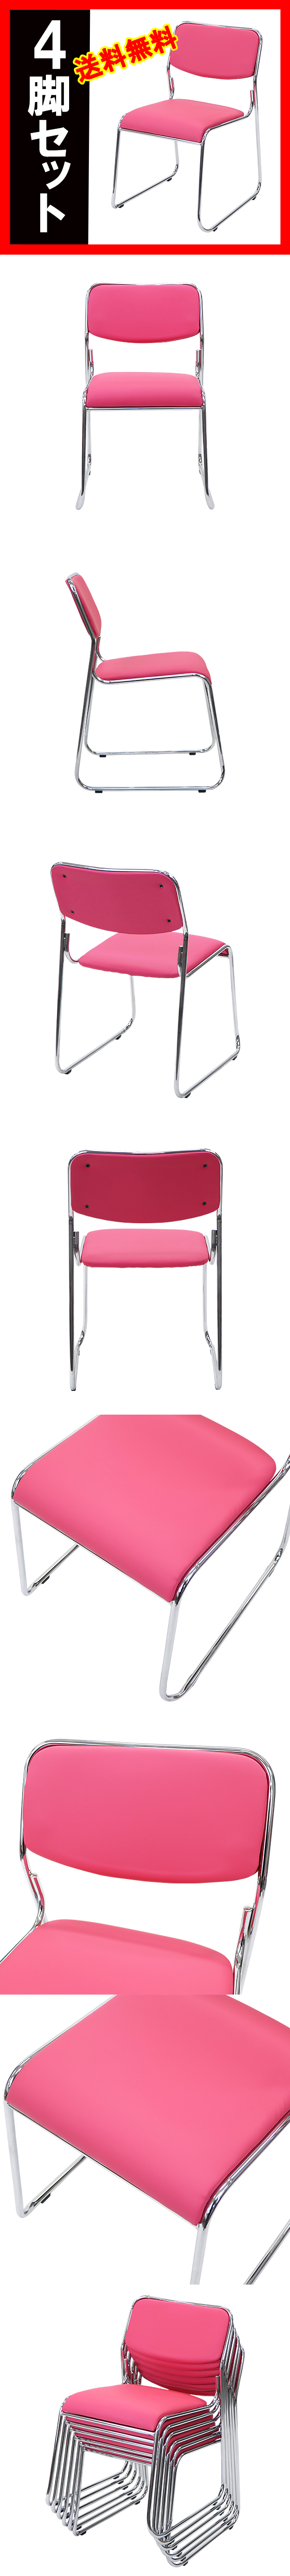 【数量限定人気】送料無料 新品 ミーティングチェア スタッキングチェア パイプ椅子 会議椅子 4脚セット ピンク パイプイス